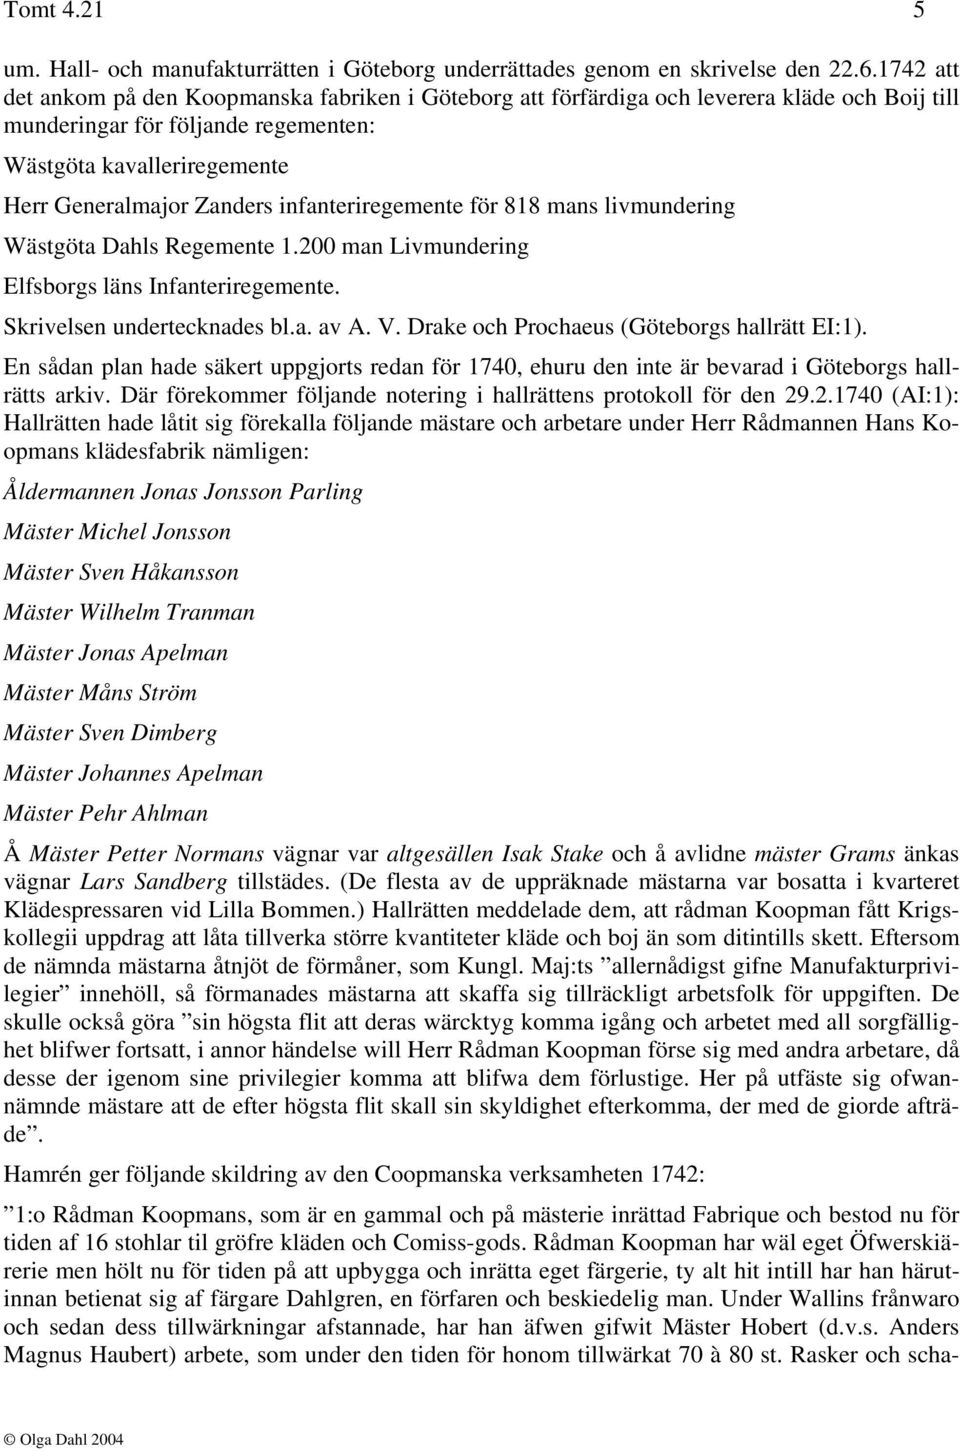 infanteriregemente för 818 mans livmundering Wästgöta Dahls Regemente 1.200 man Livmundering Elfsborgs läns Infanteriregemente. Skrivelsen undertecknades bl.a. av A. V.